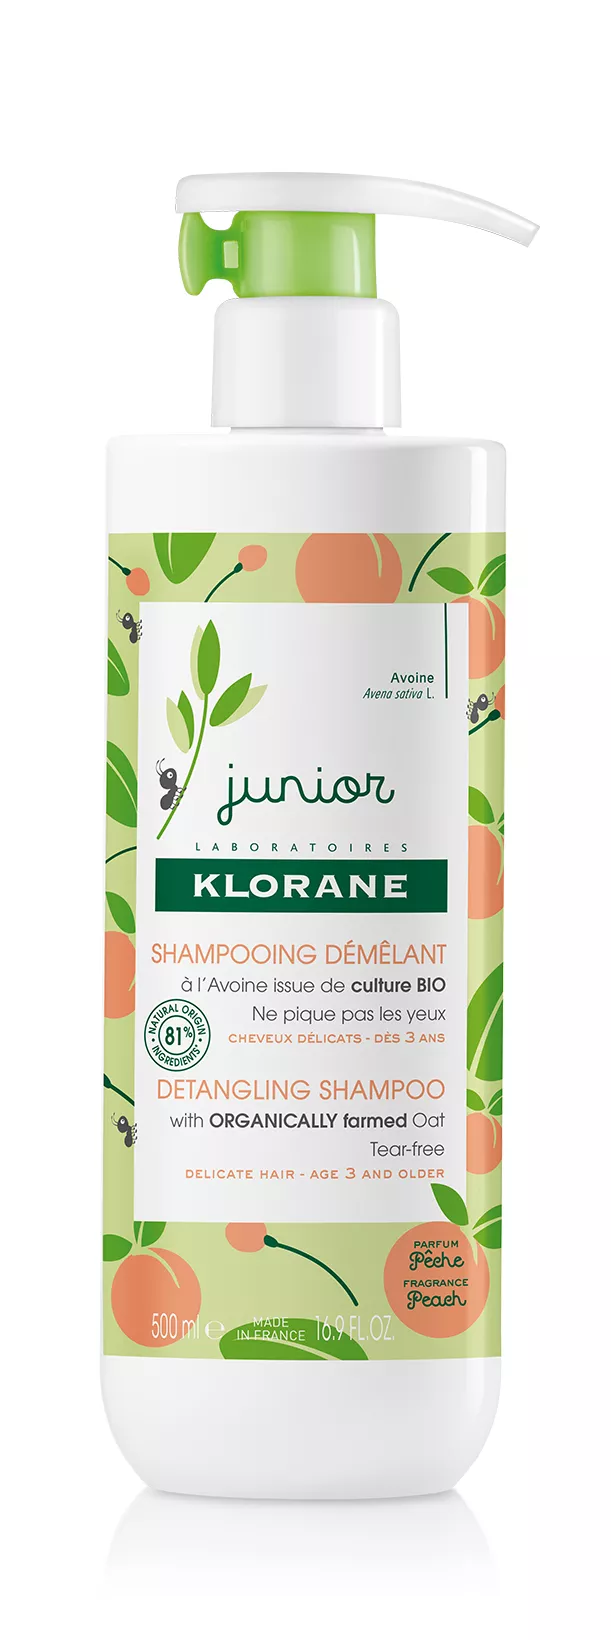 Klorane Junior Sampon pentru descurcarea parului cu aroma de piersica, 500ml, [],epastila.ro